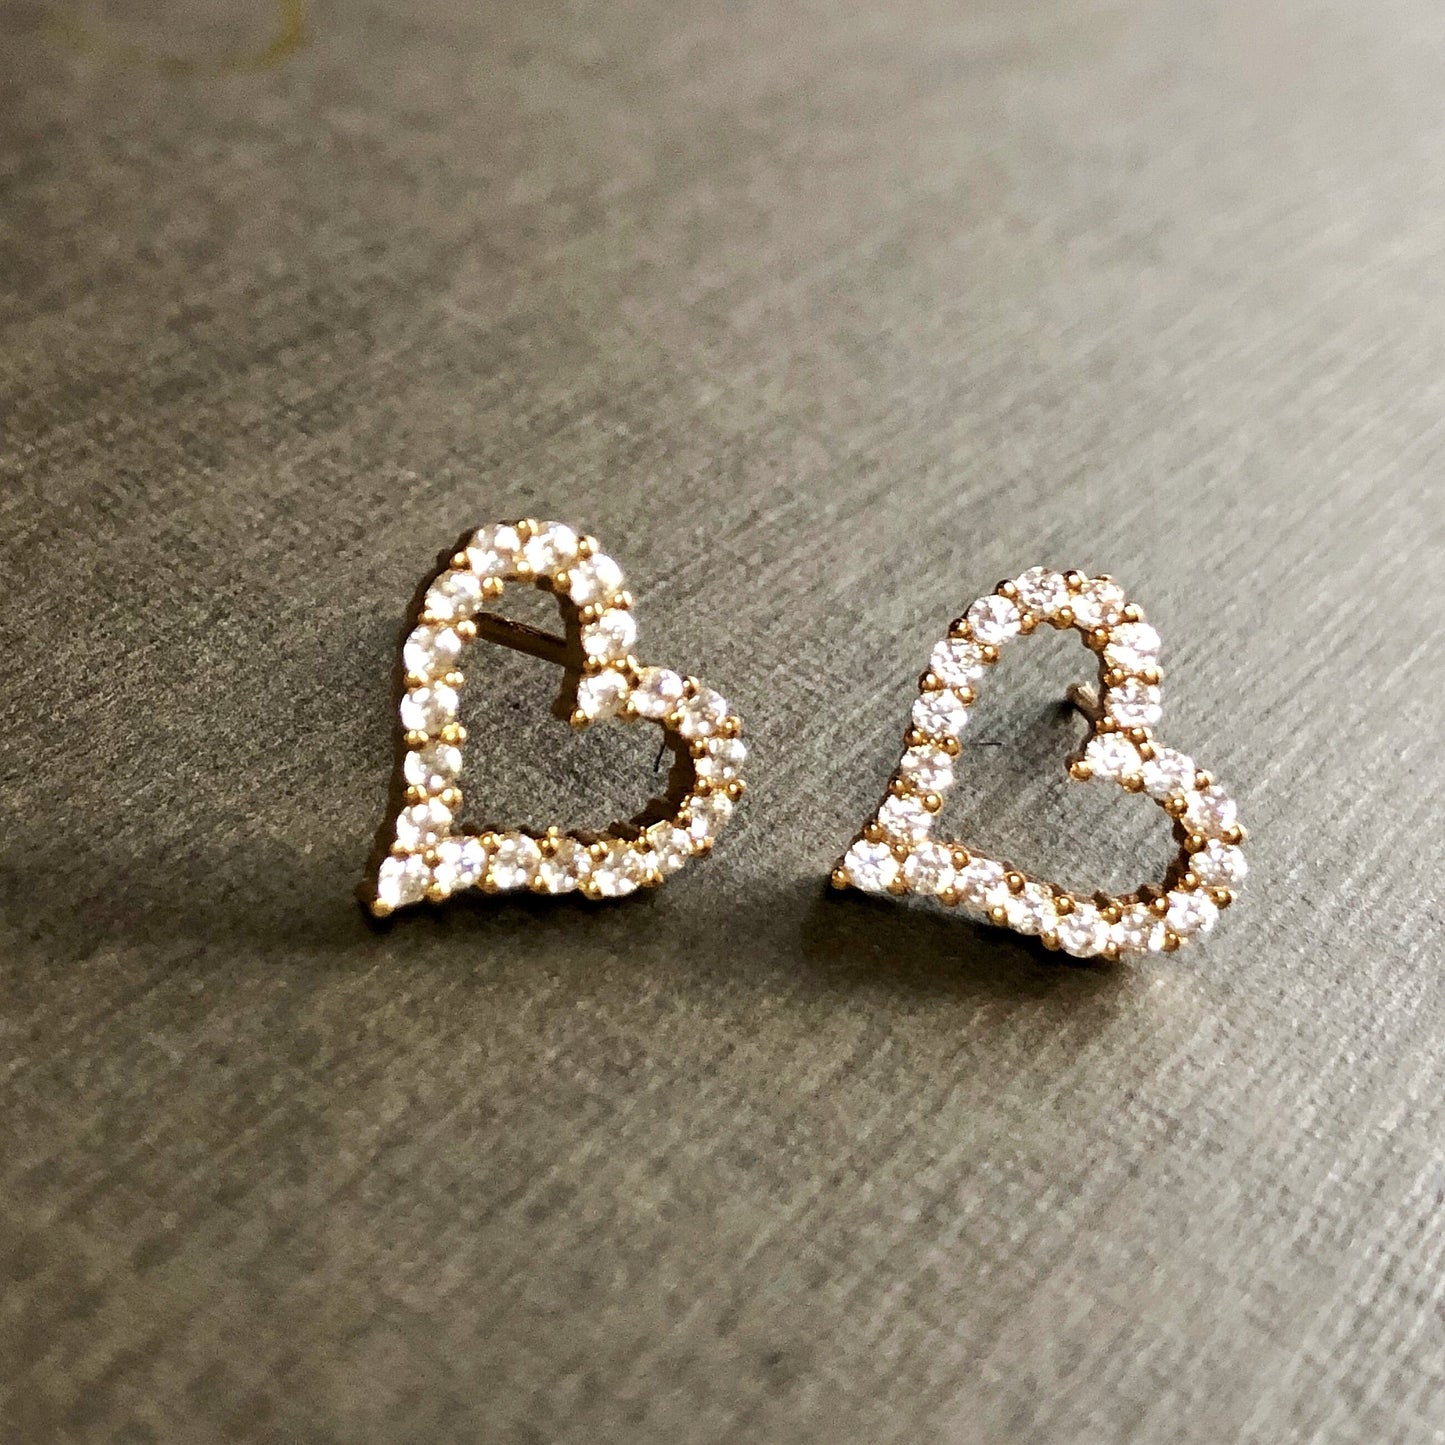 Valentine Special Flirty Open Heart Stud Earrings